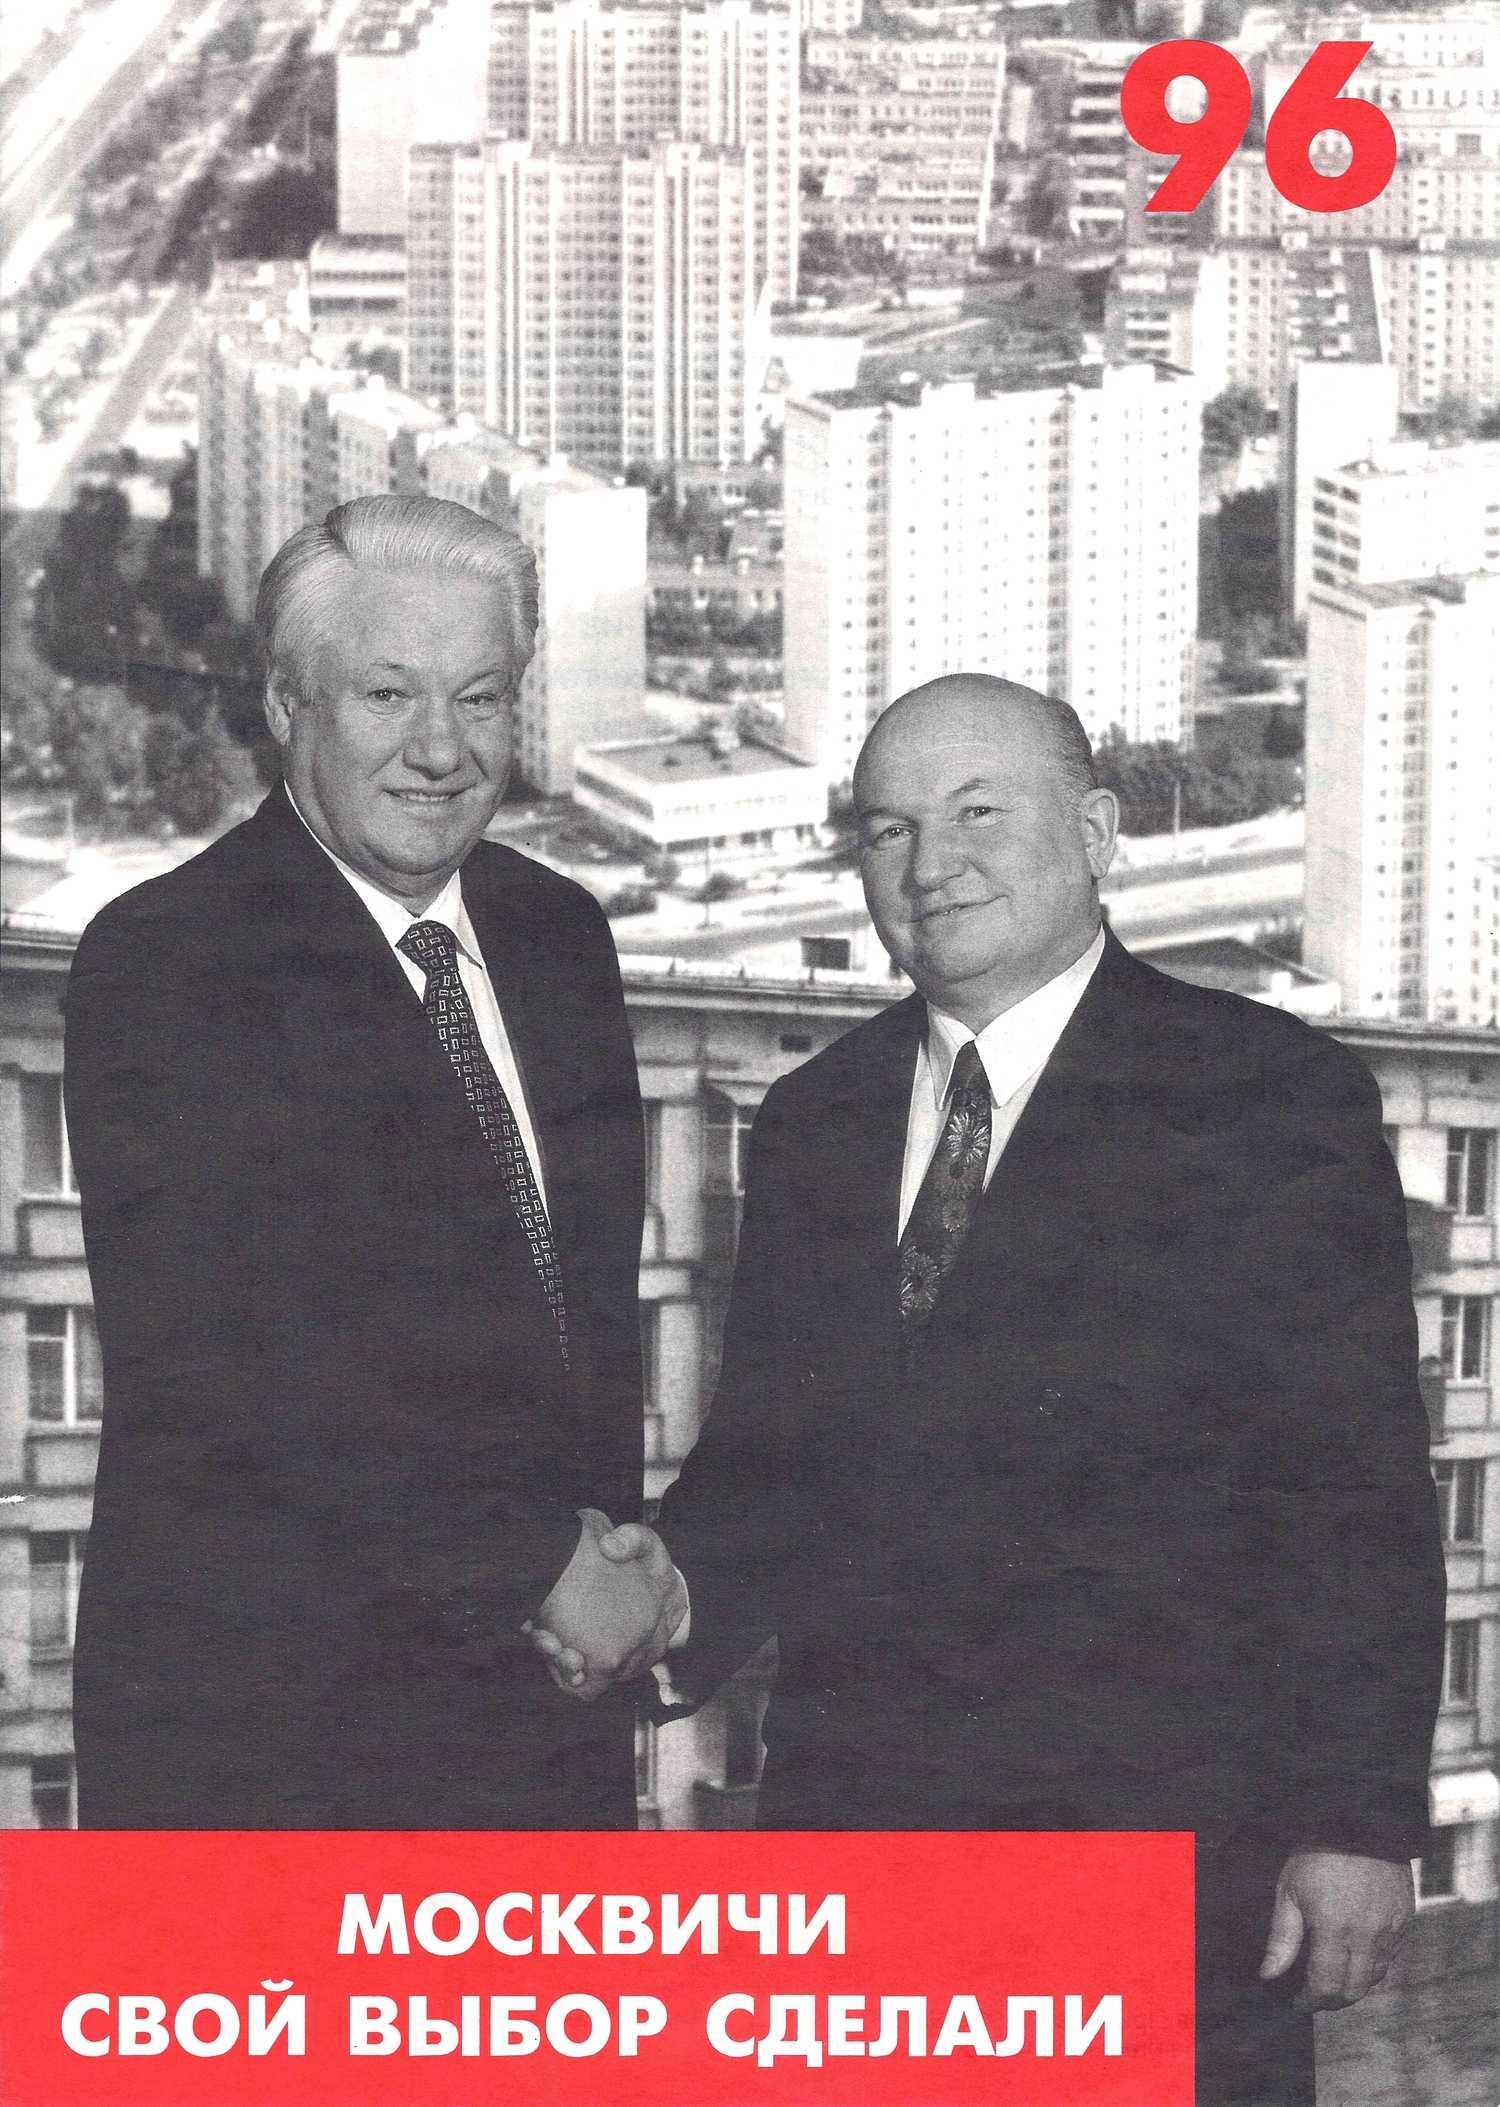 Листовка «Москвичи свой выбор сделали» к выборам президента Российской Федерации и мэра Москвы 1996 года.